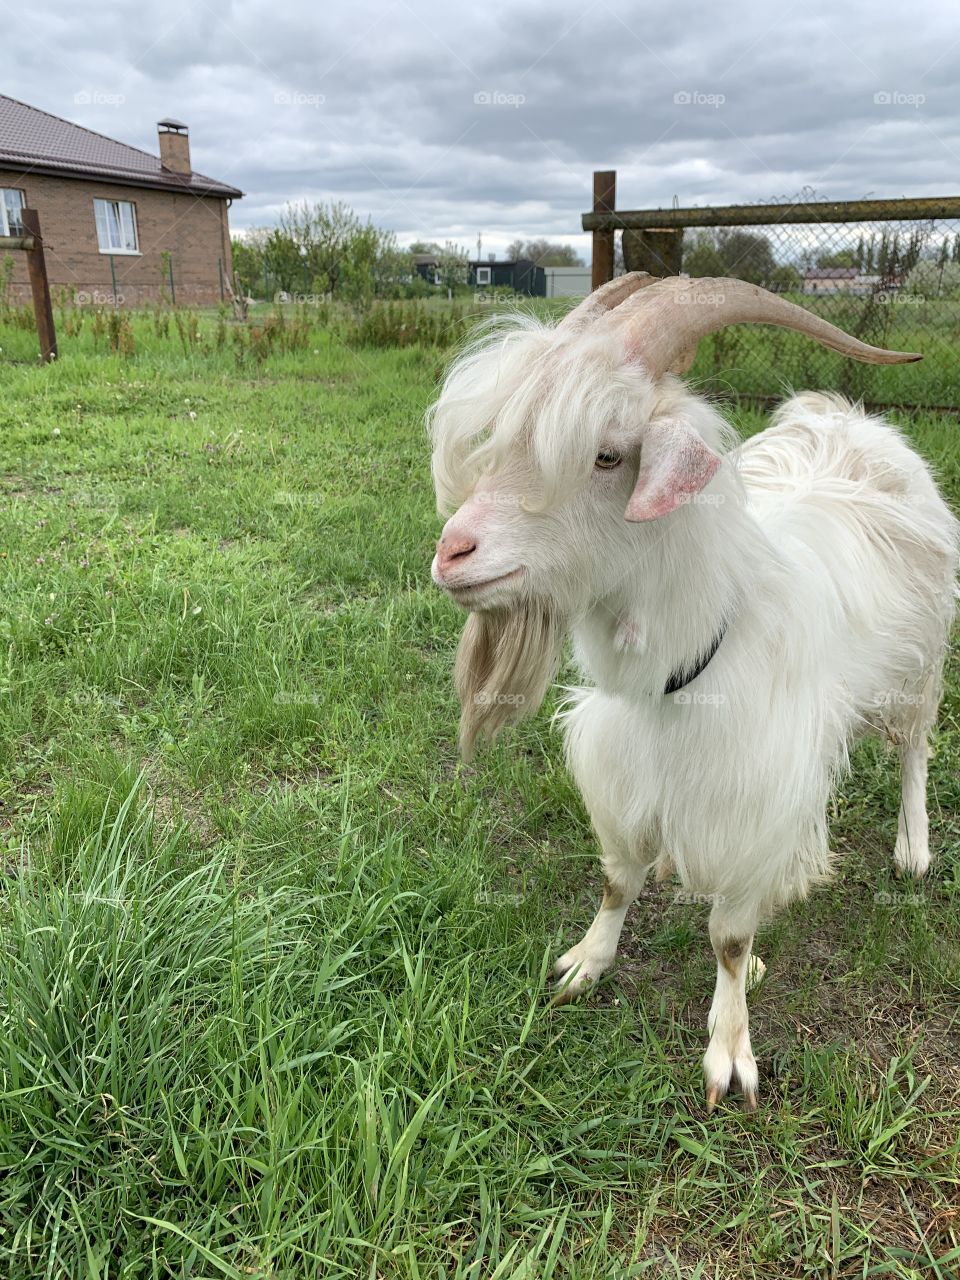 Local goat. 